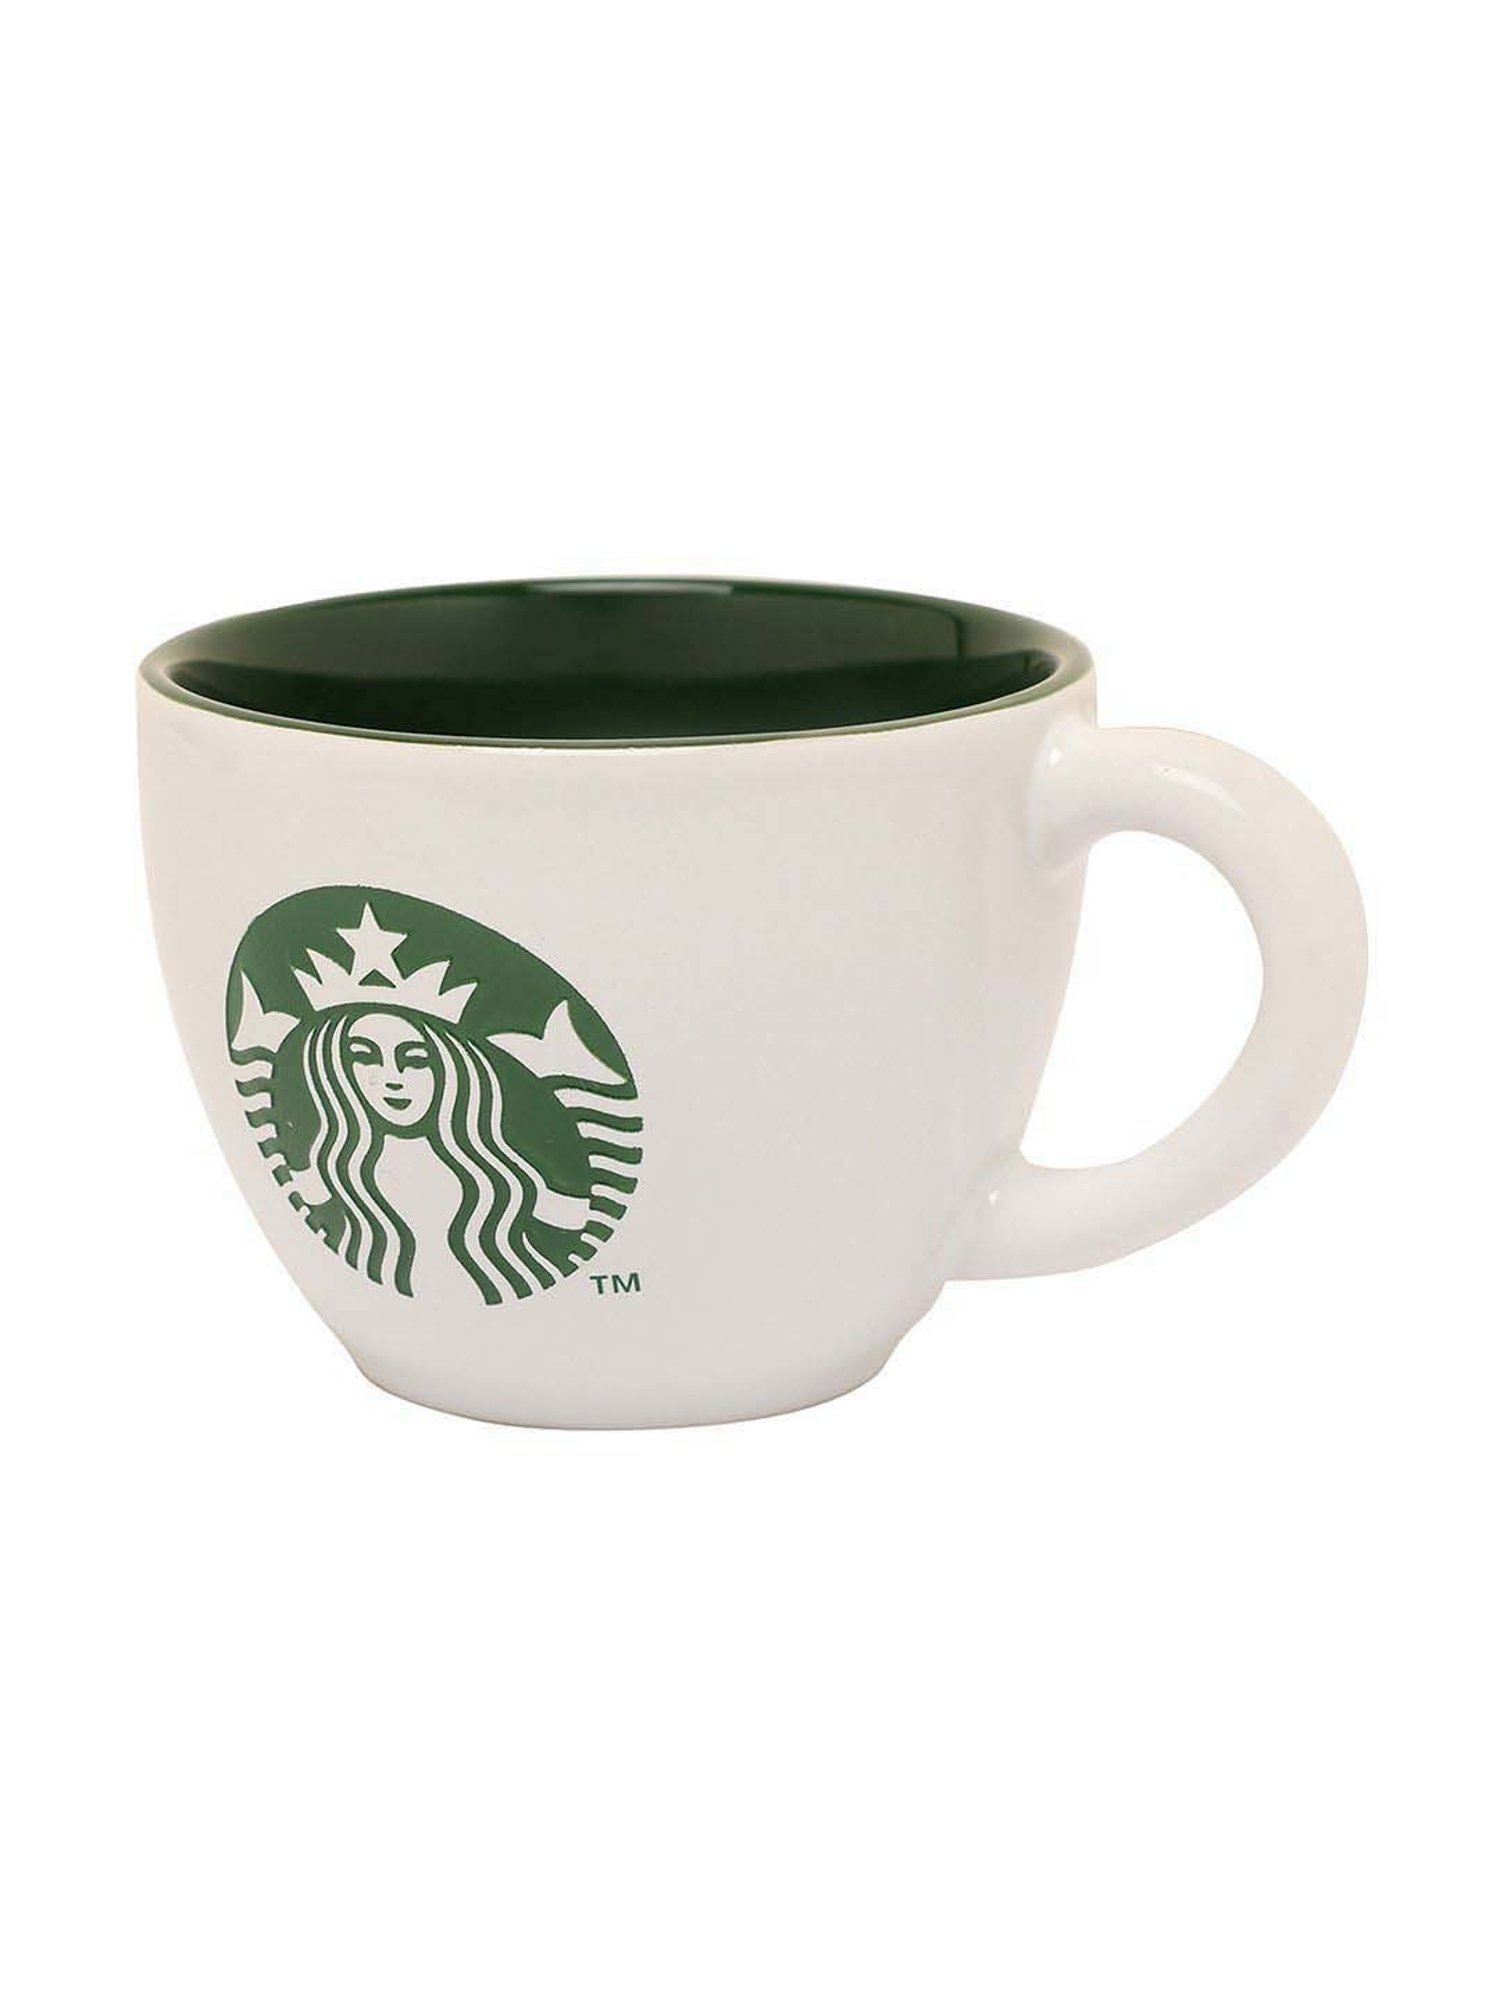 Buy Starbucks White and Green Siren Coffee Mug 296 ml at Best Price @ Tata  CLiQ